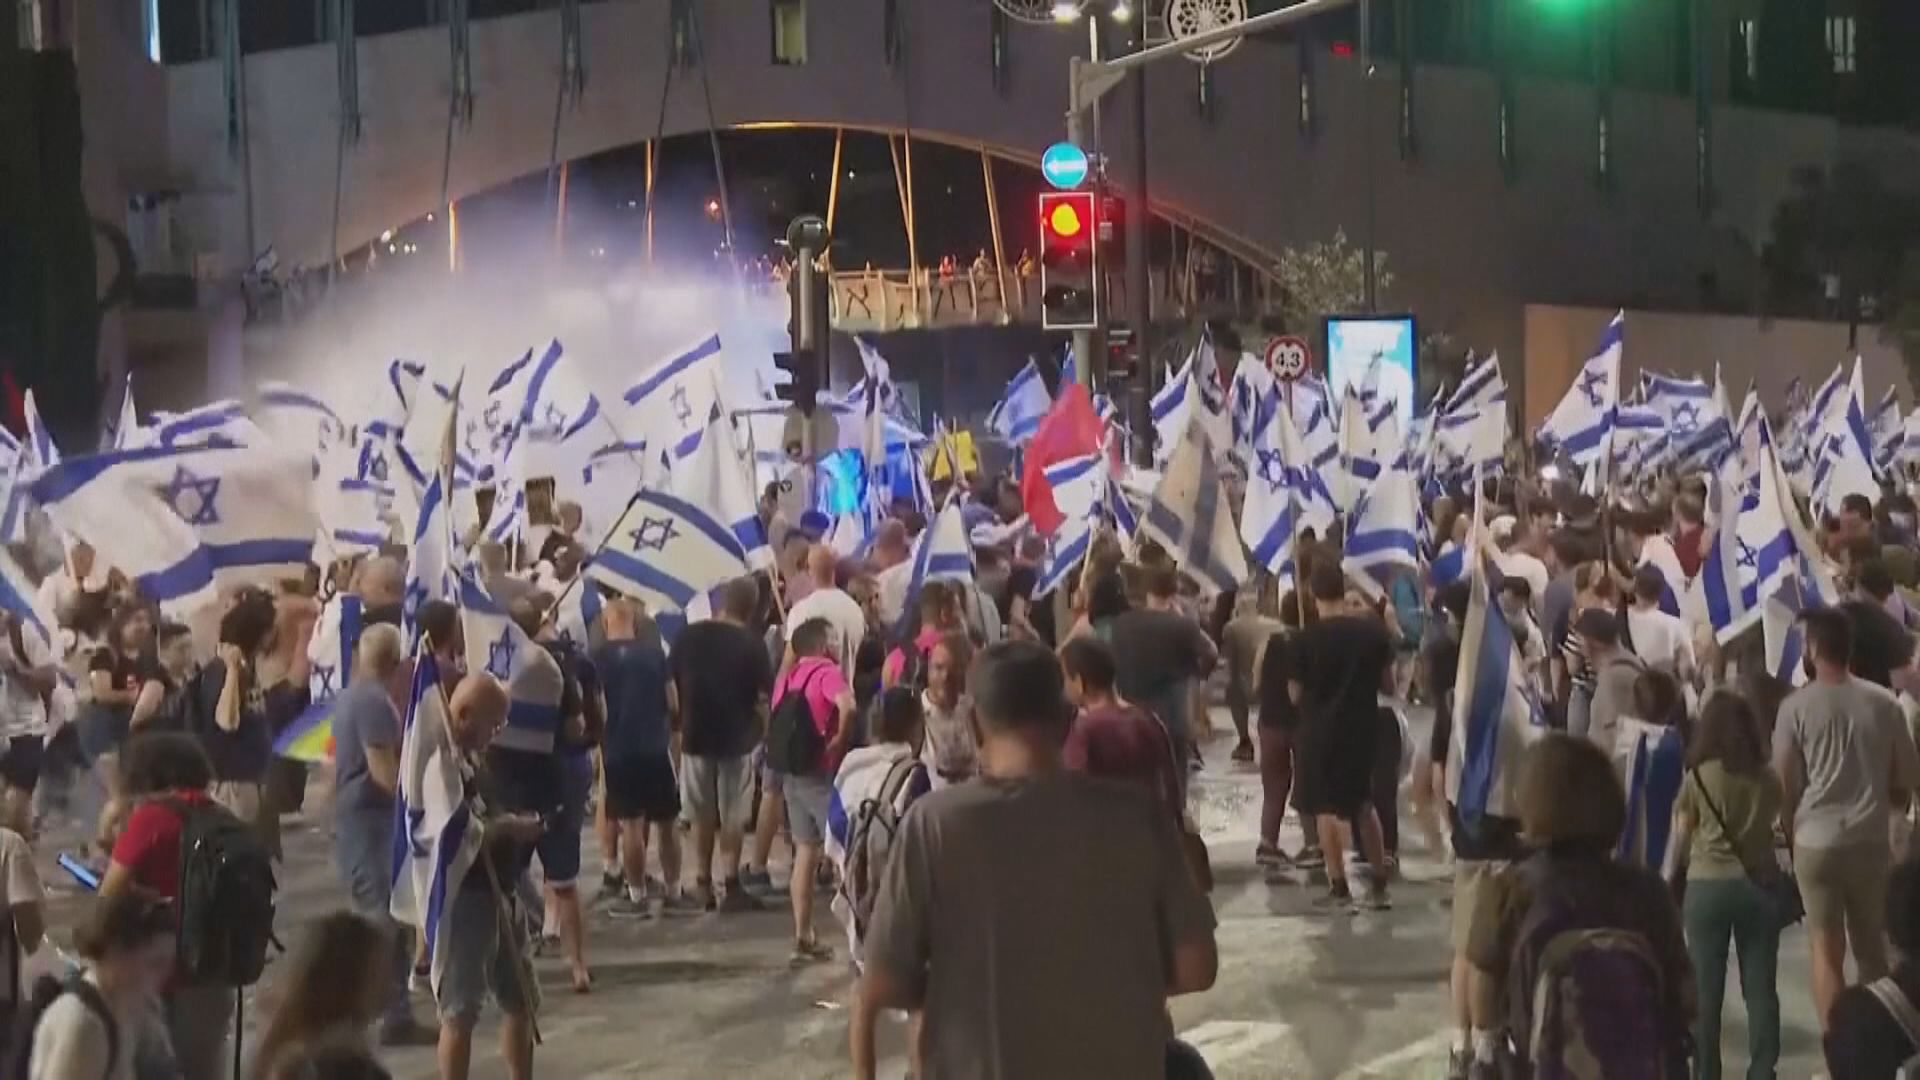 以色列國會通過司法改革草案引發示威 內塔尼亞胡稱會尋求各方共識